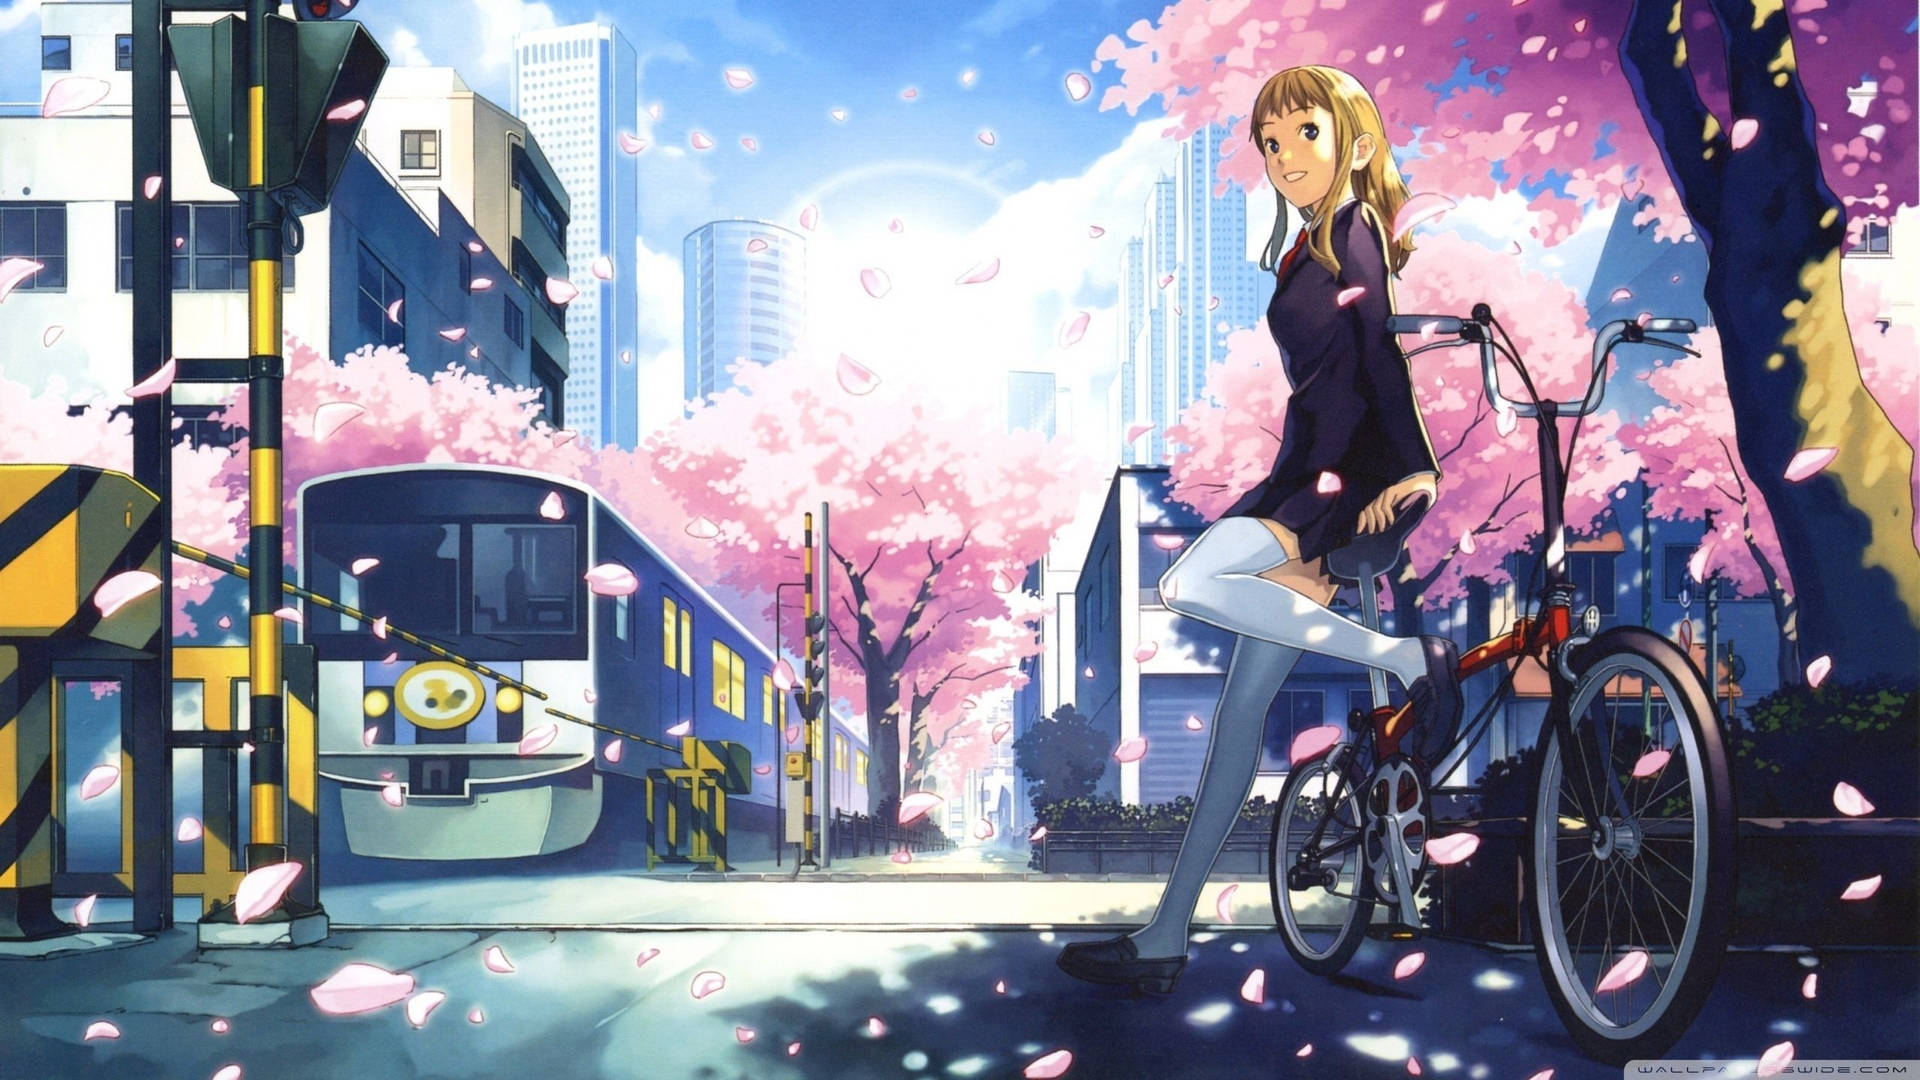 Anime Girl City Wallpapers